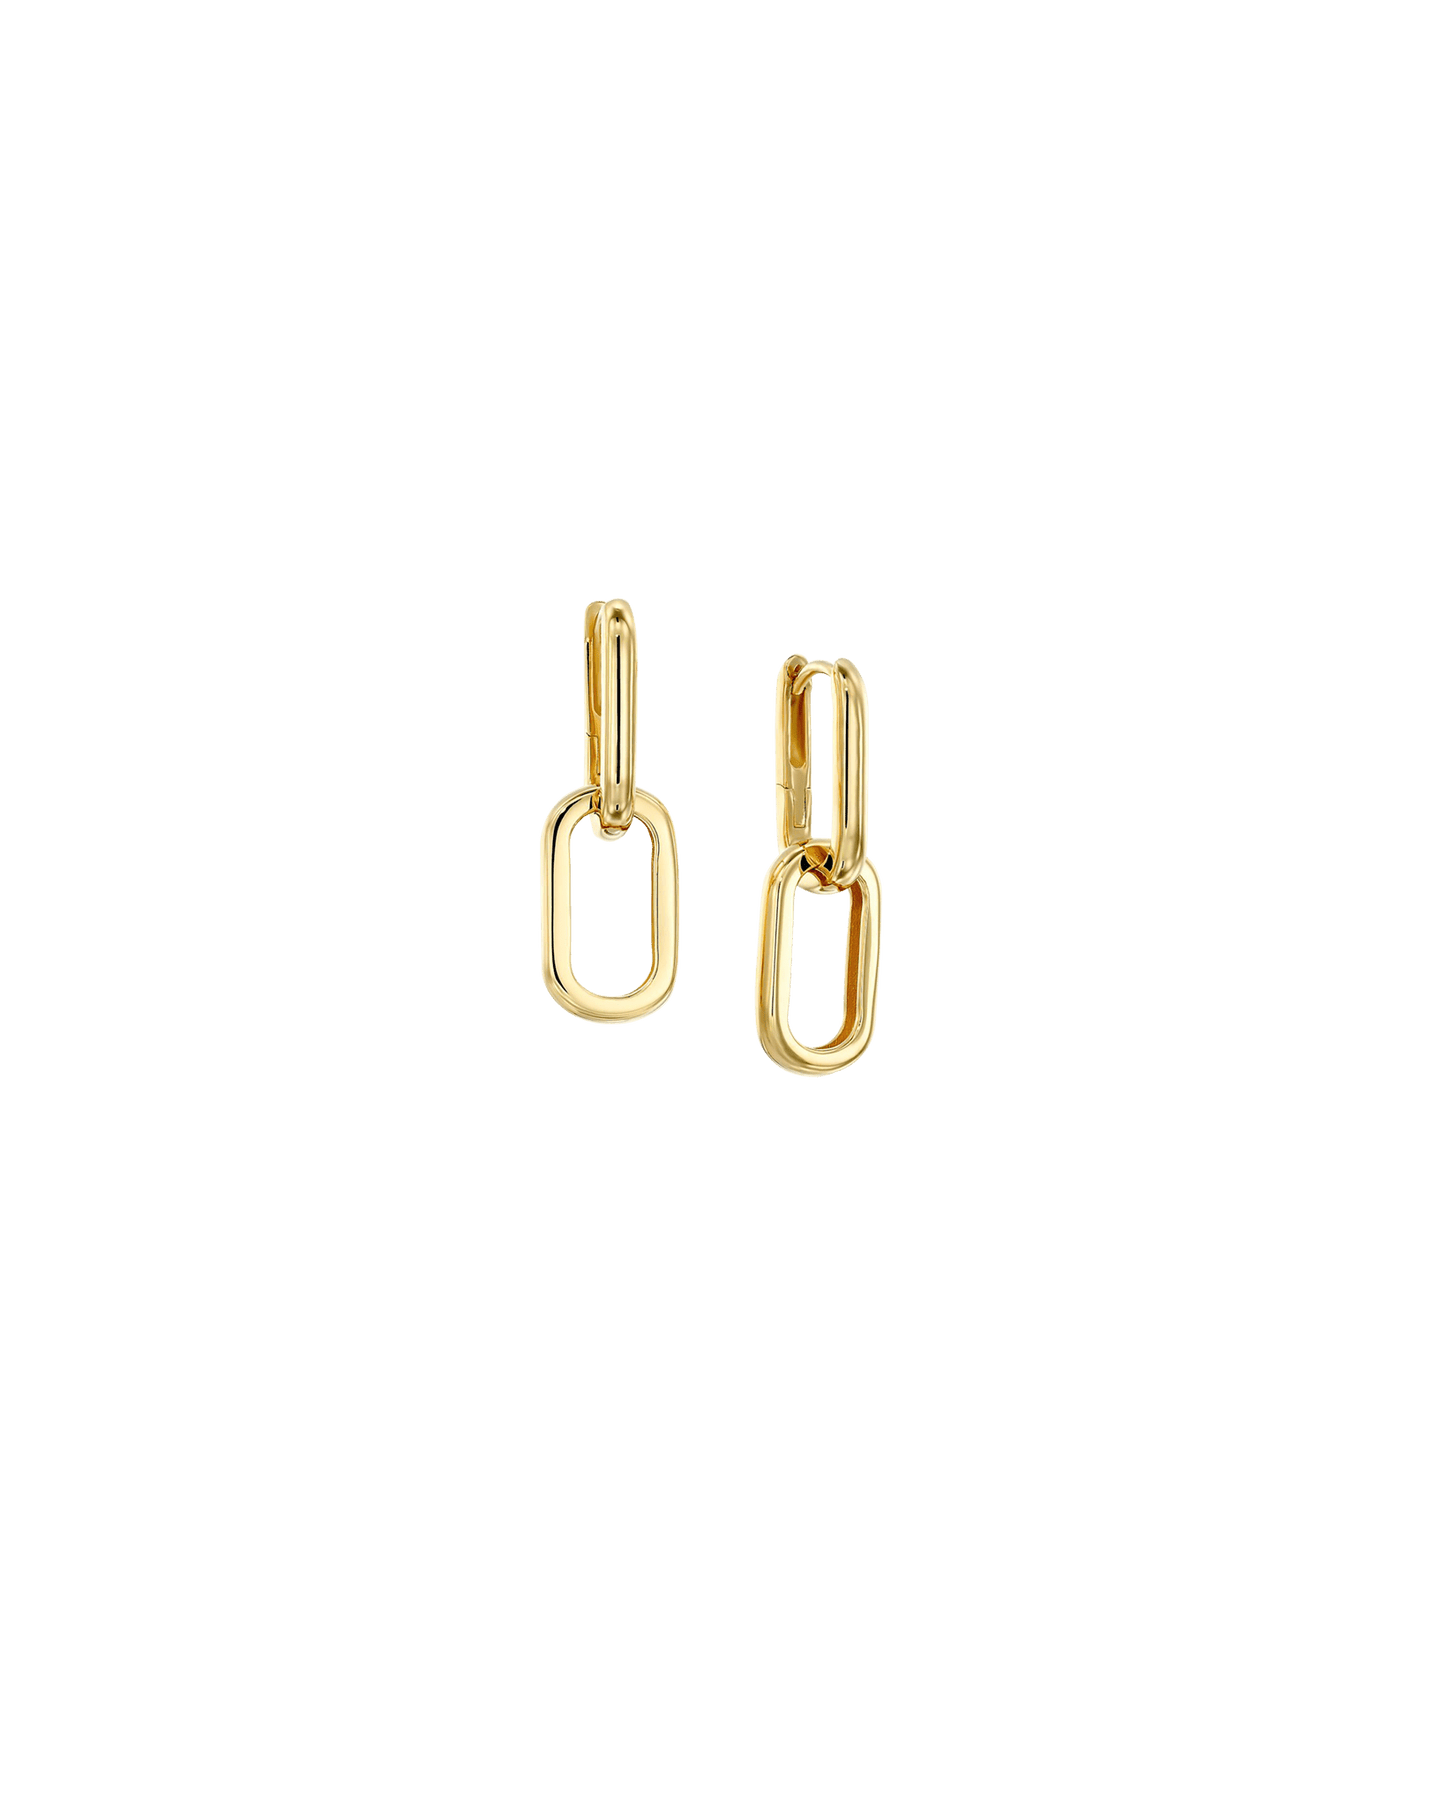 Link Drop Earrings - 18K Gold Vermeil Earrings magal-dev 